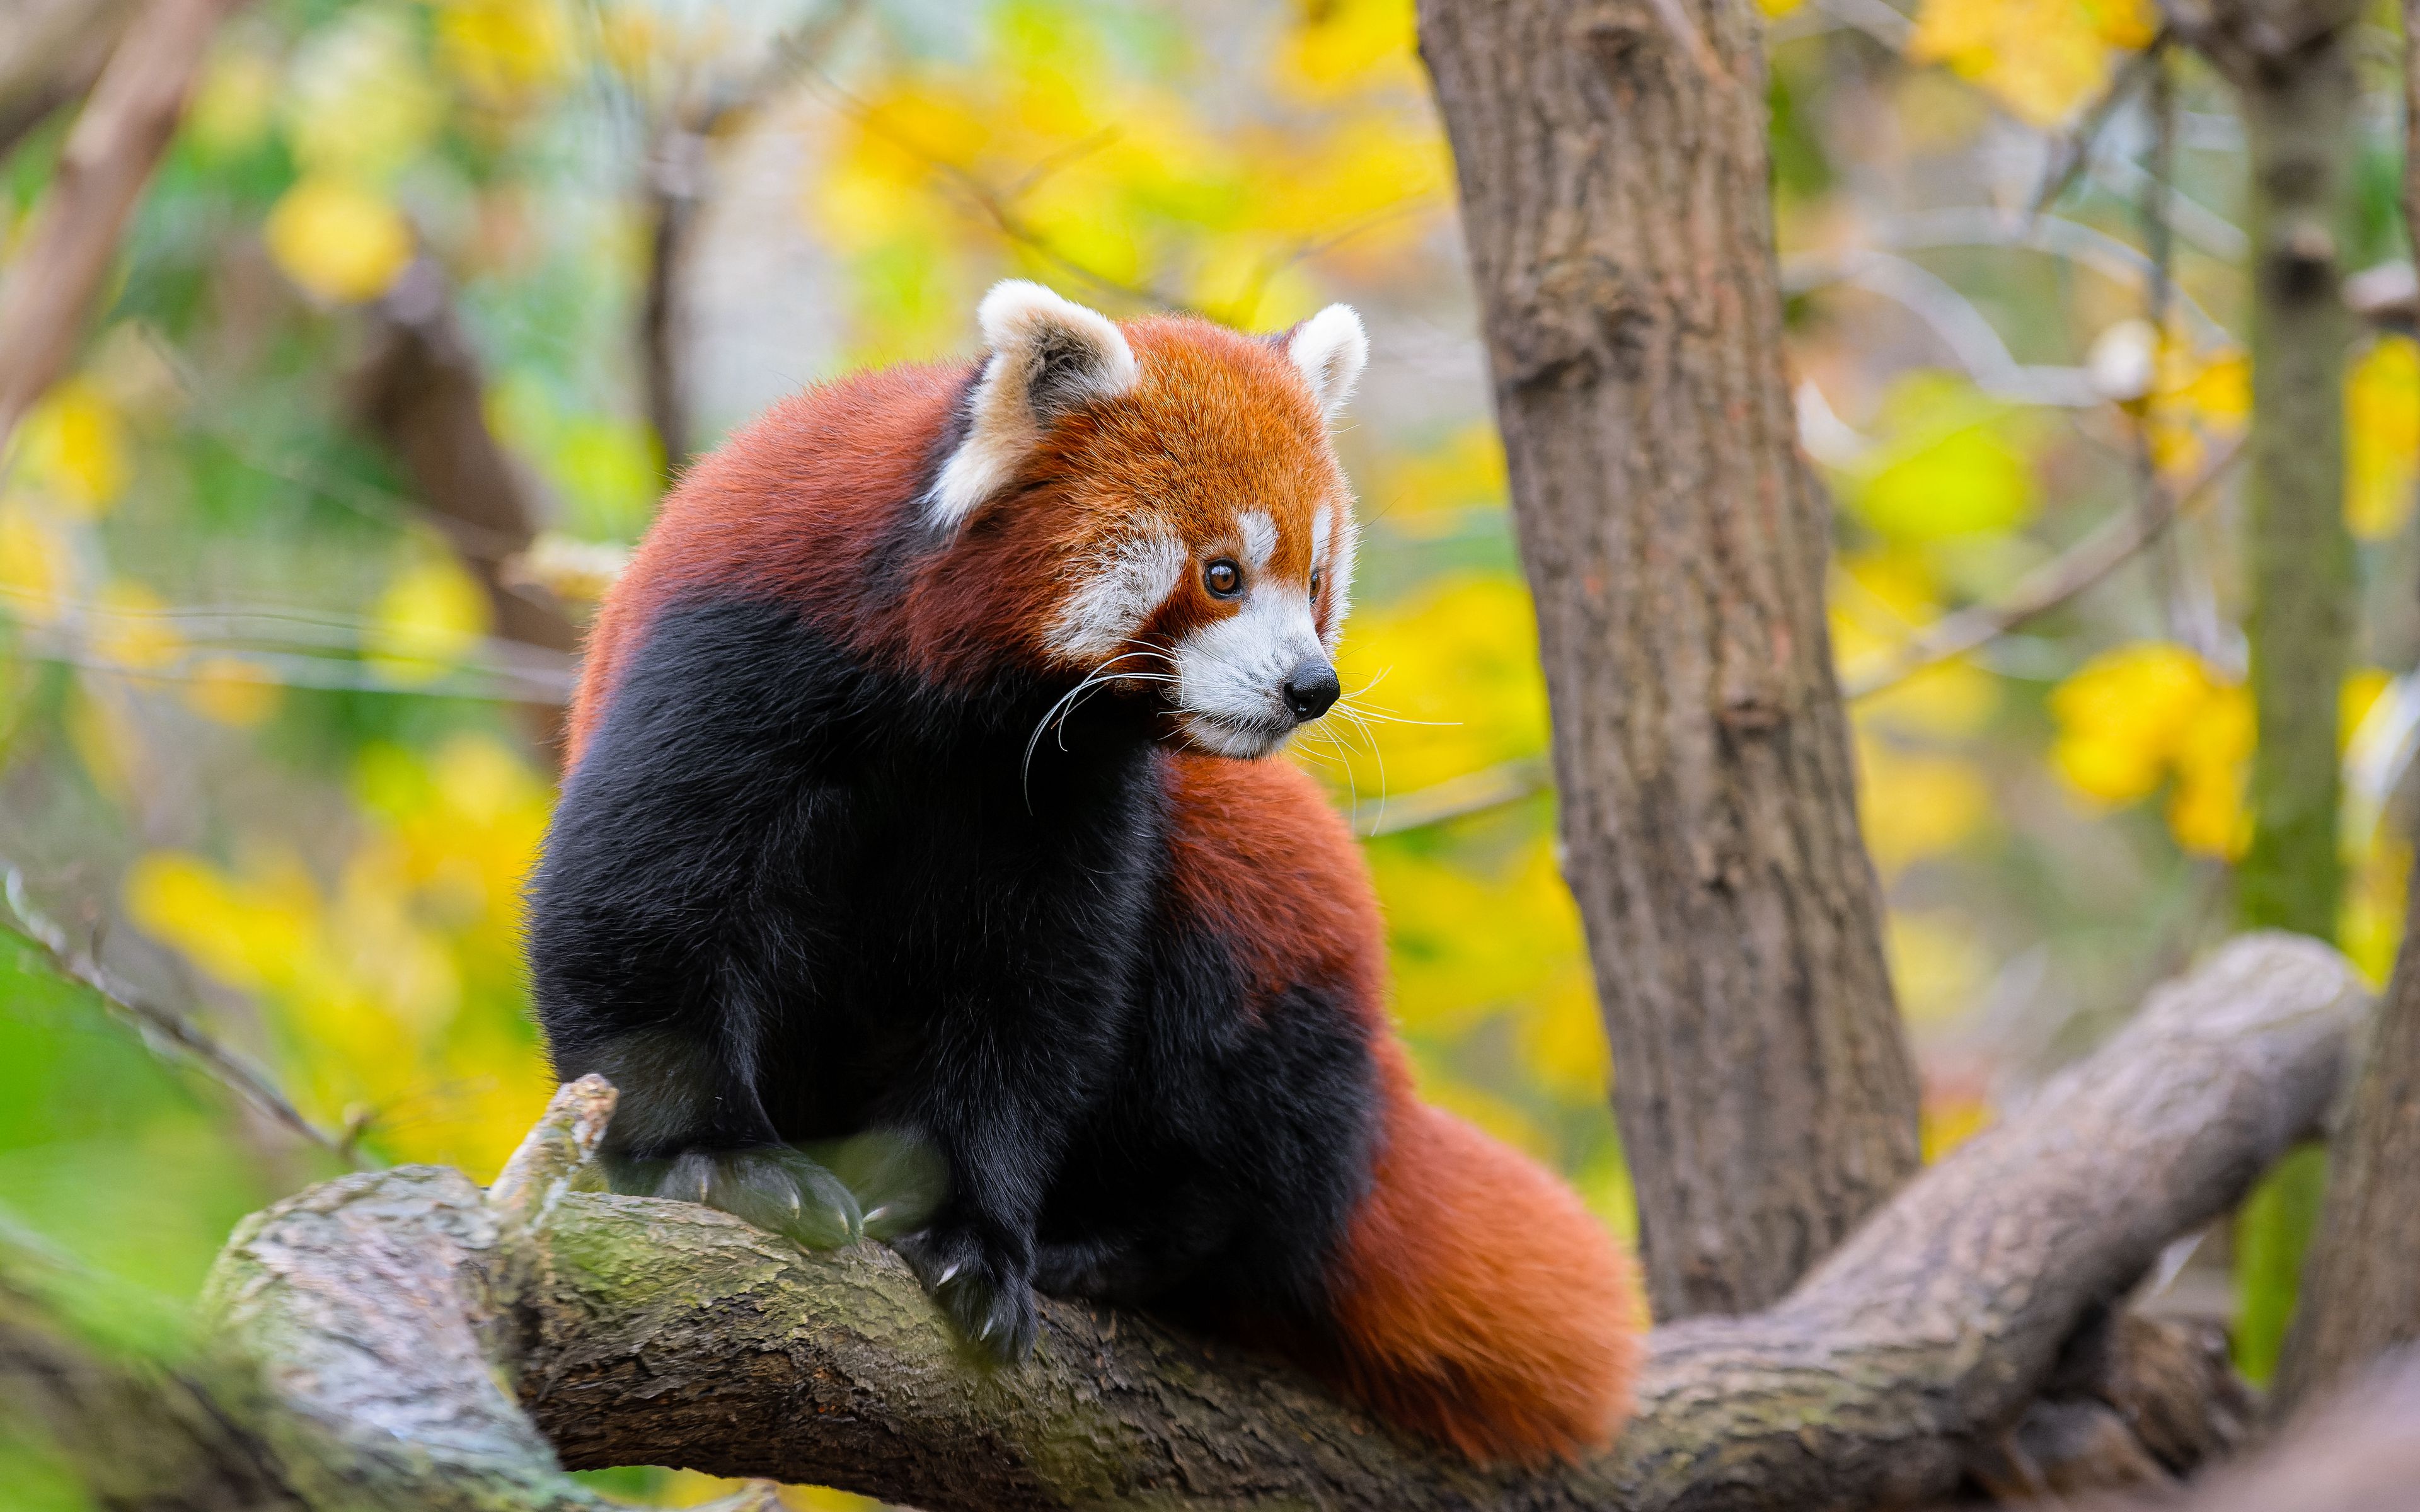 Download wallpaper 3840x2400 red panda, animal, tree, wildlife 4k ultra ...